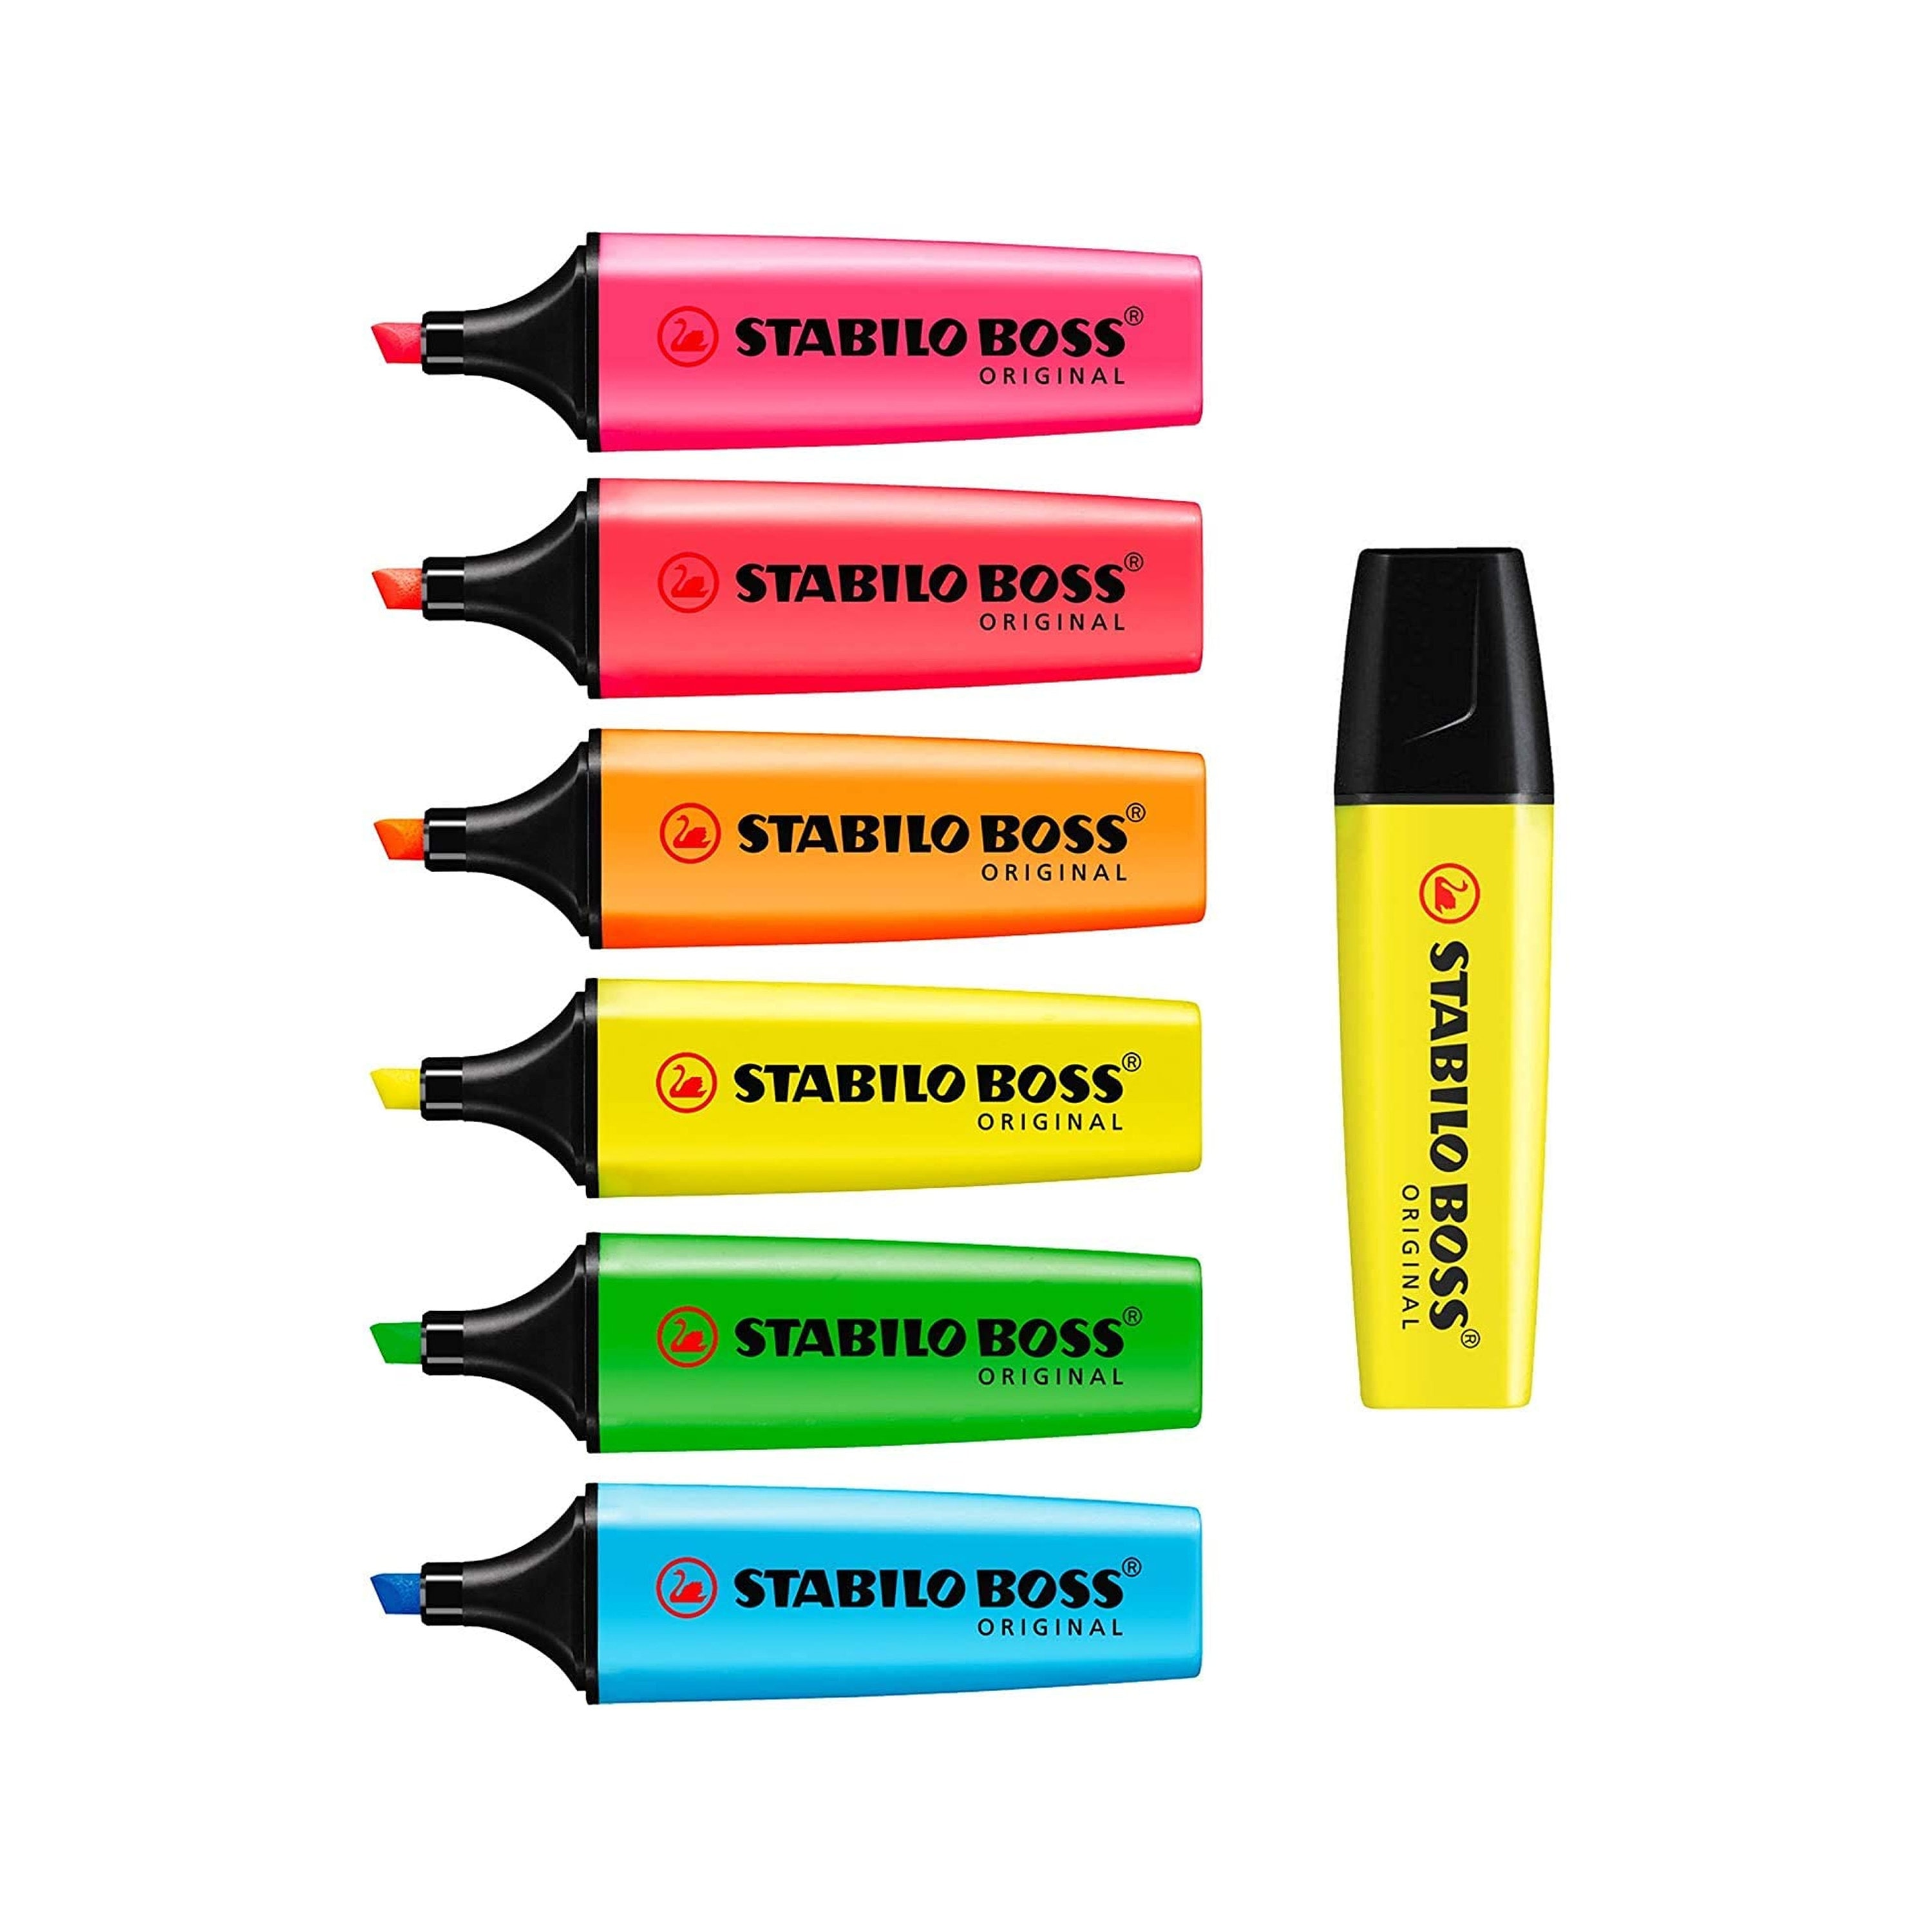 Highlighter STABILO BOSS ORIGINAL Highlighter Marker Pens Full Set of 7  Ideal for Revision Notes, School & Office 